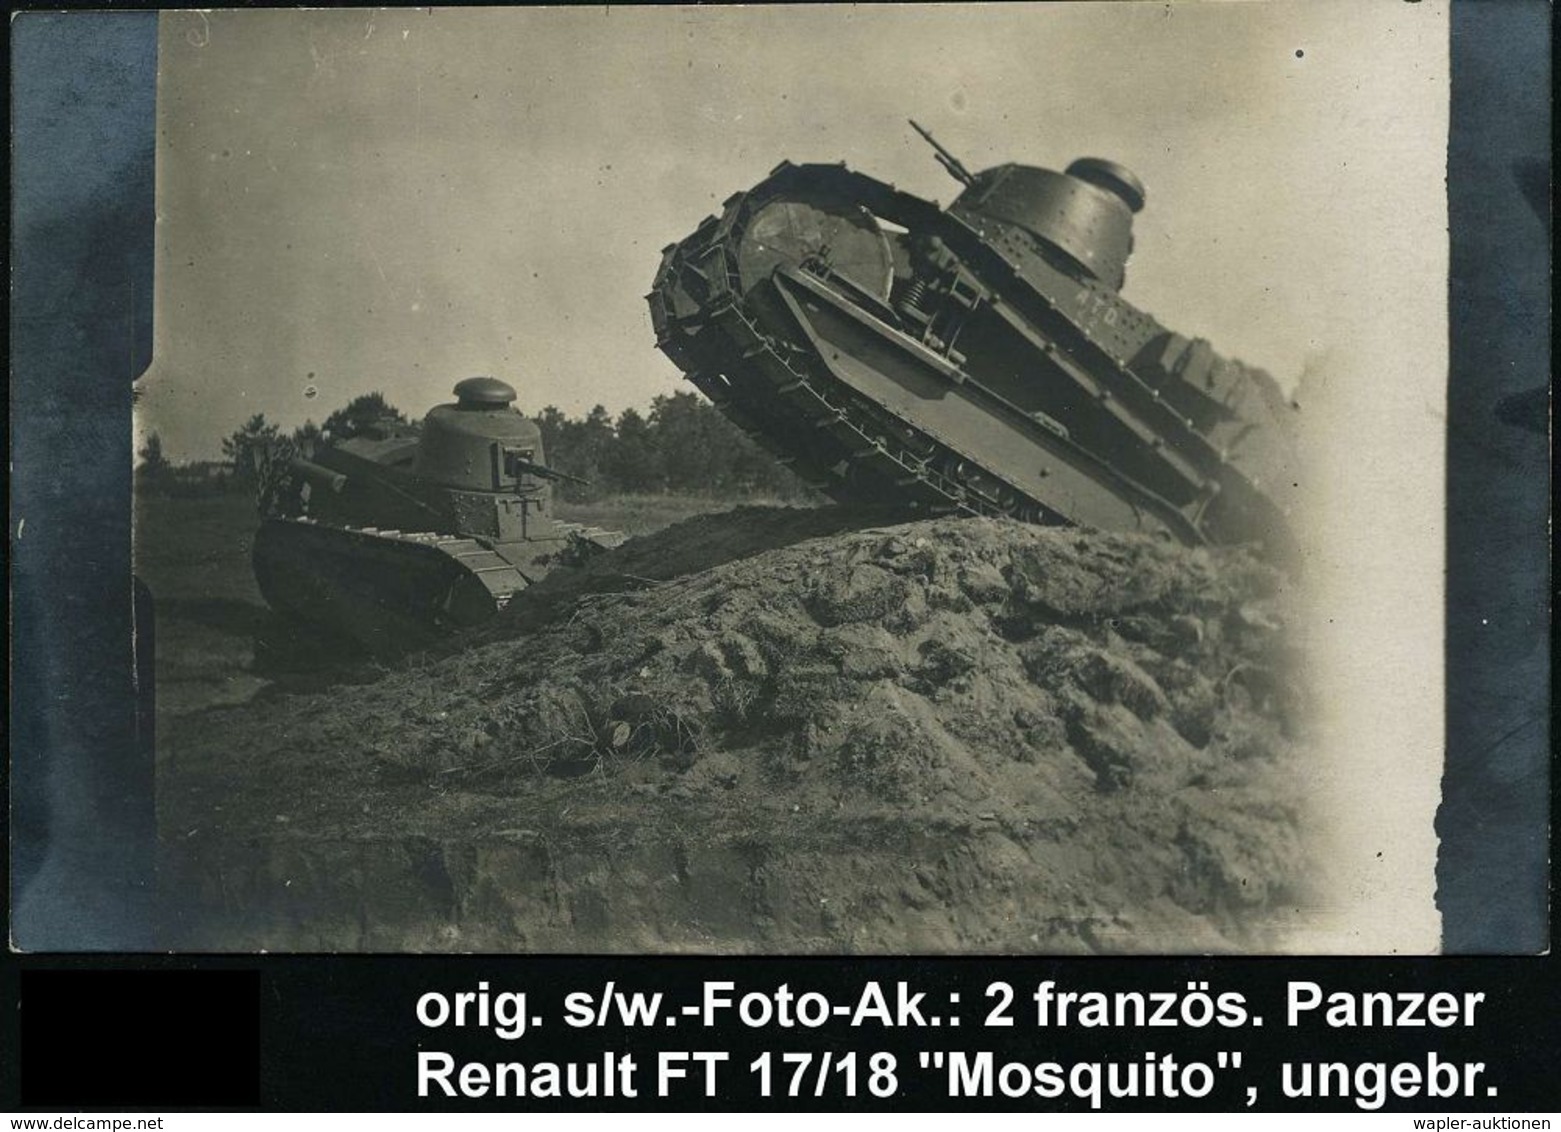 GEPANZERTE KRAFTFAHRZEUGE / PANZER : FRANKREICH 1917 S/w.-Foto-Ak: 2 Französ. Panzer Renault "Mosquito FT 17/18" Bei Der - Sonstige (Land)